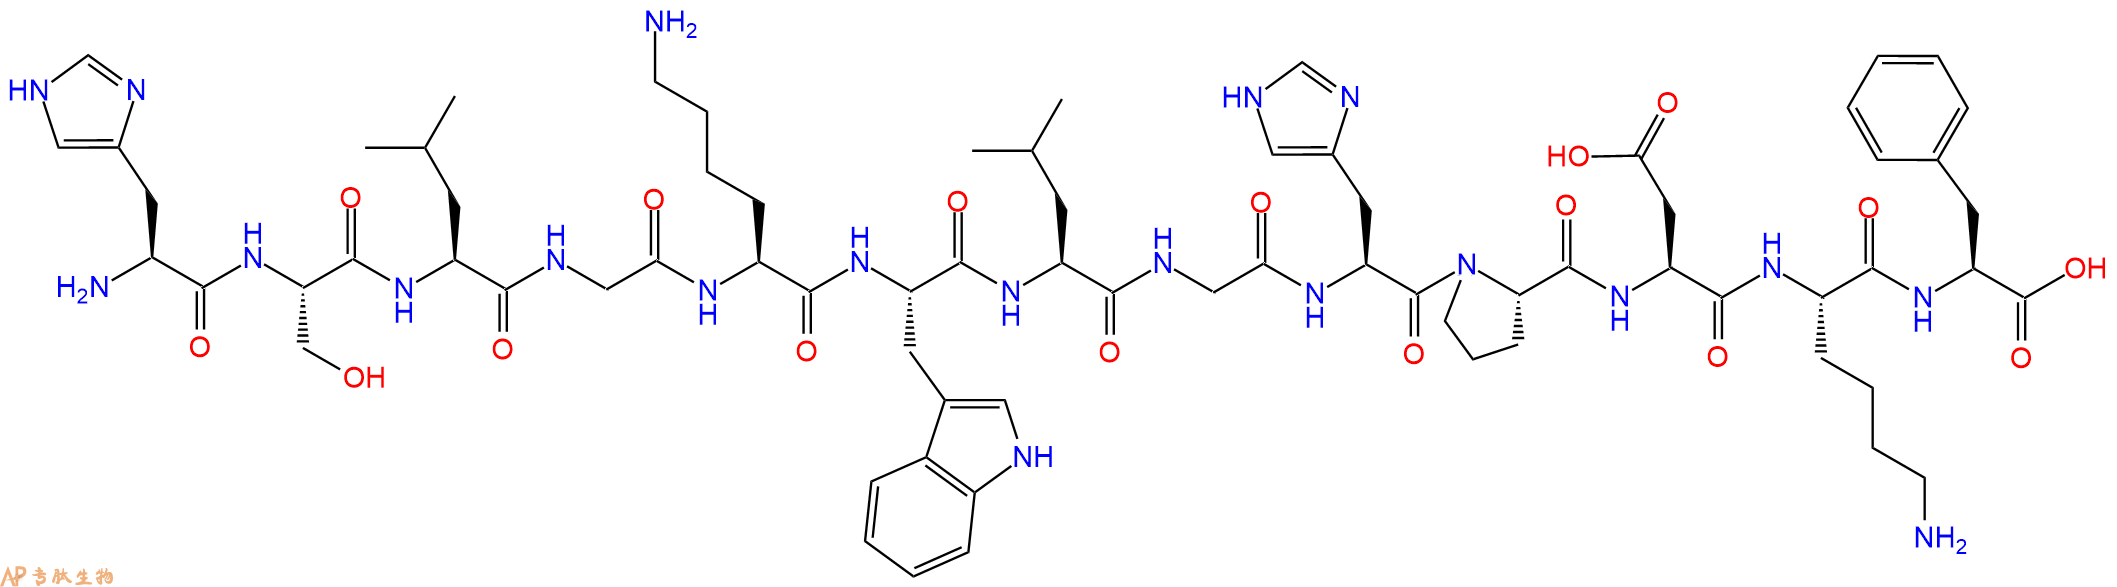 专肽生物产品髓鞘蛋白脂质蛋白(Ser140)-PLP (139-151)122018-58-0